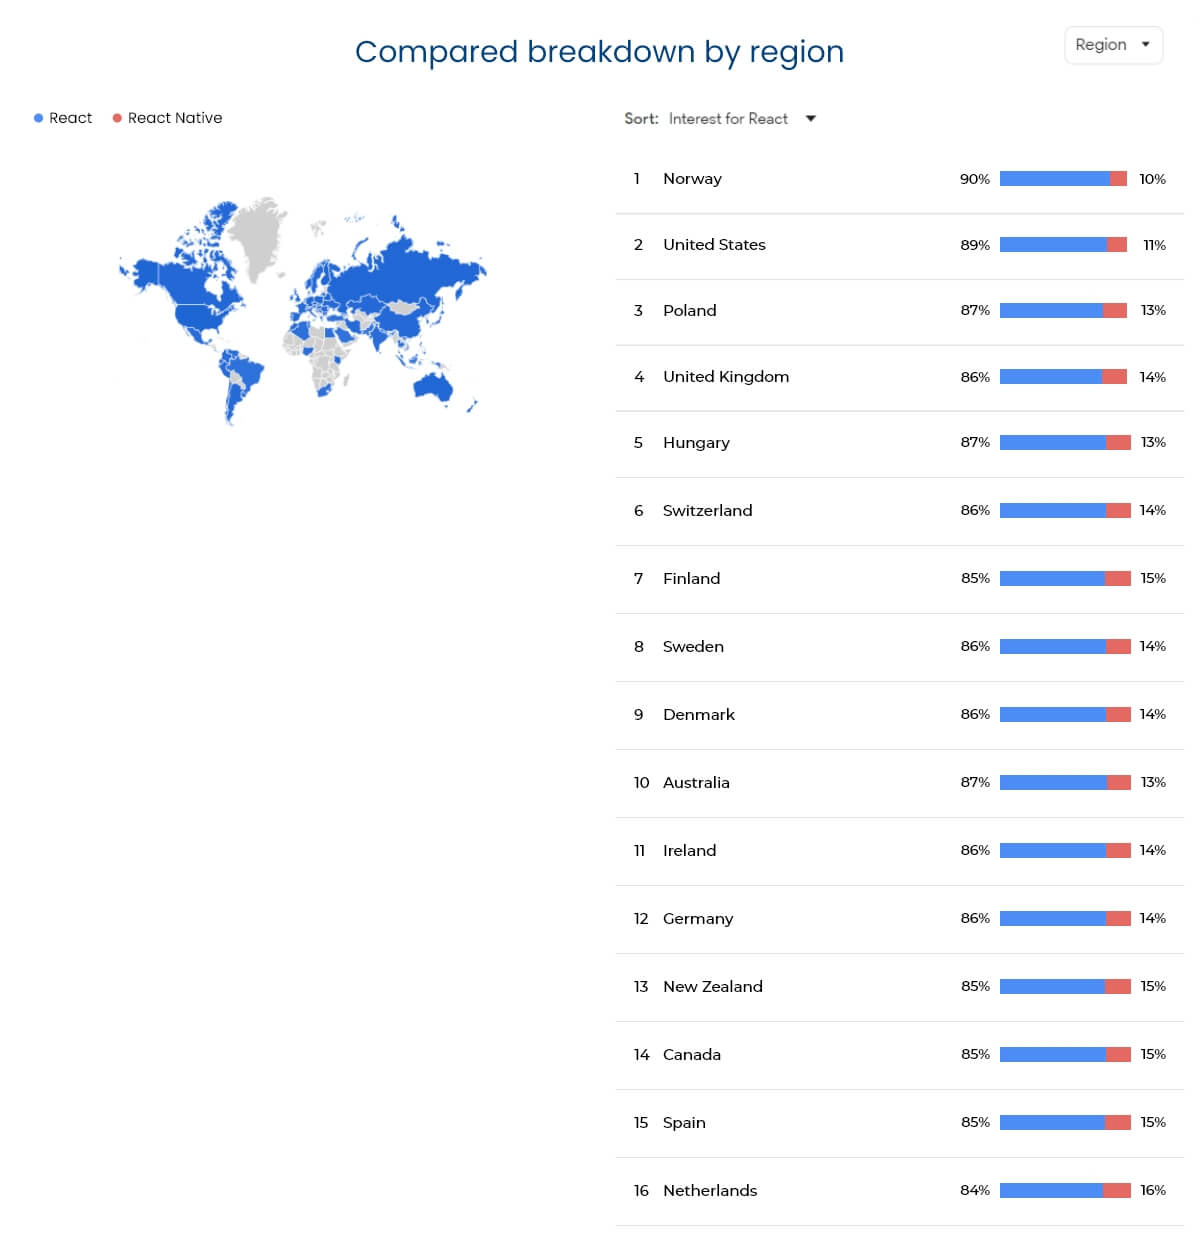 reactjs vs react native Compared breakdown by region